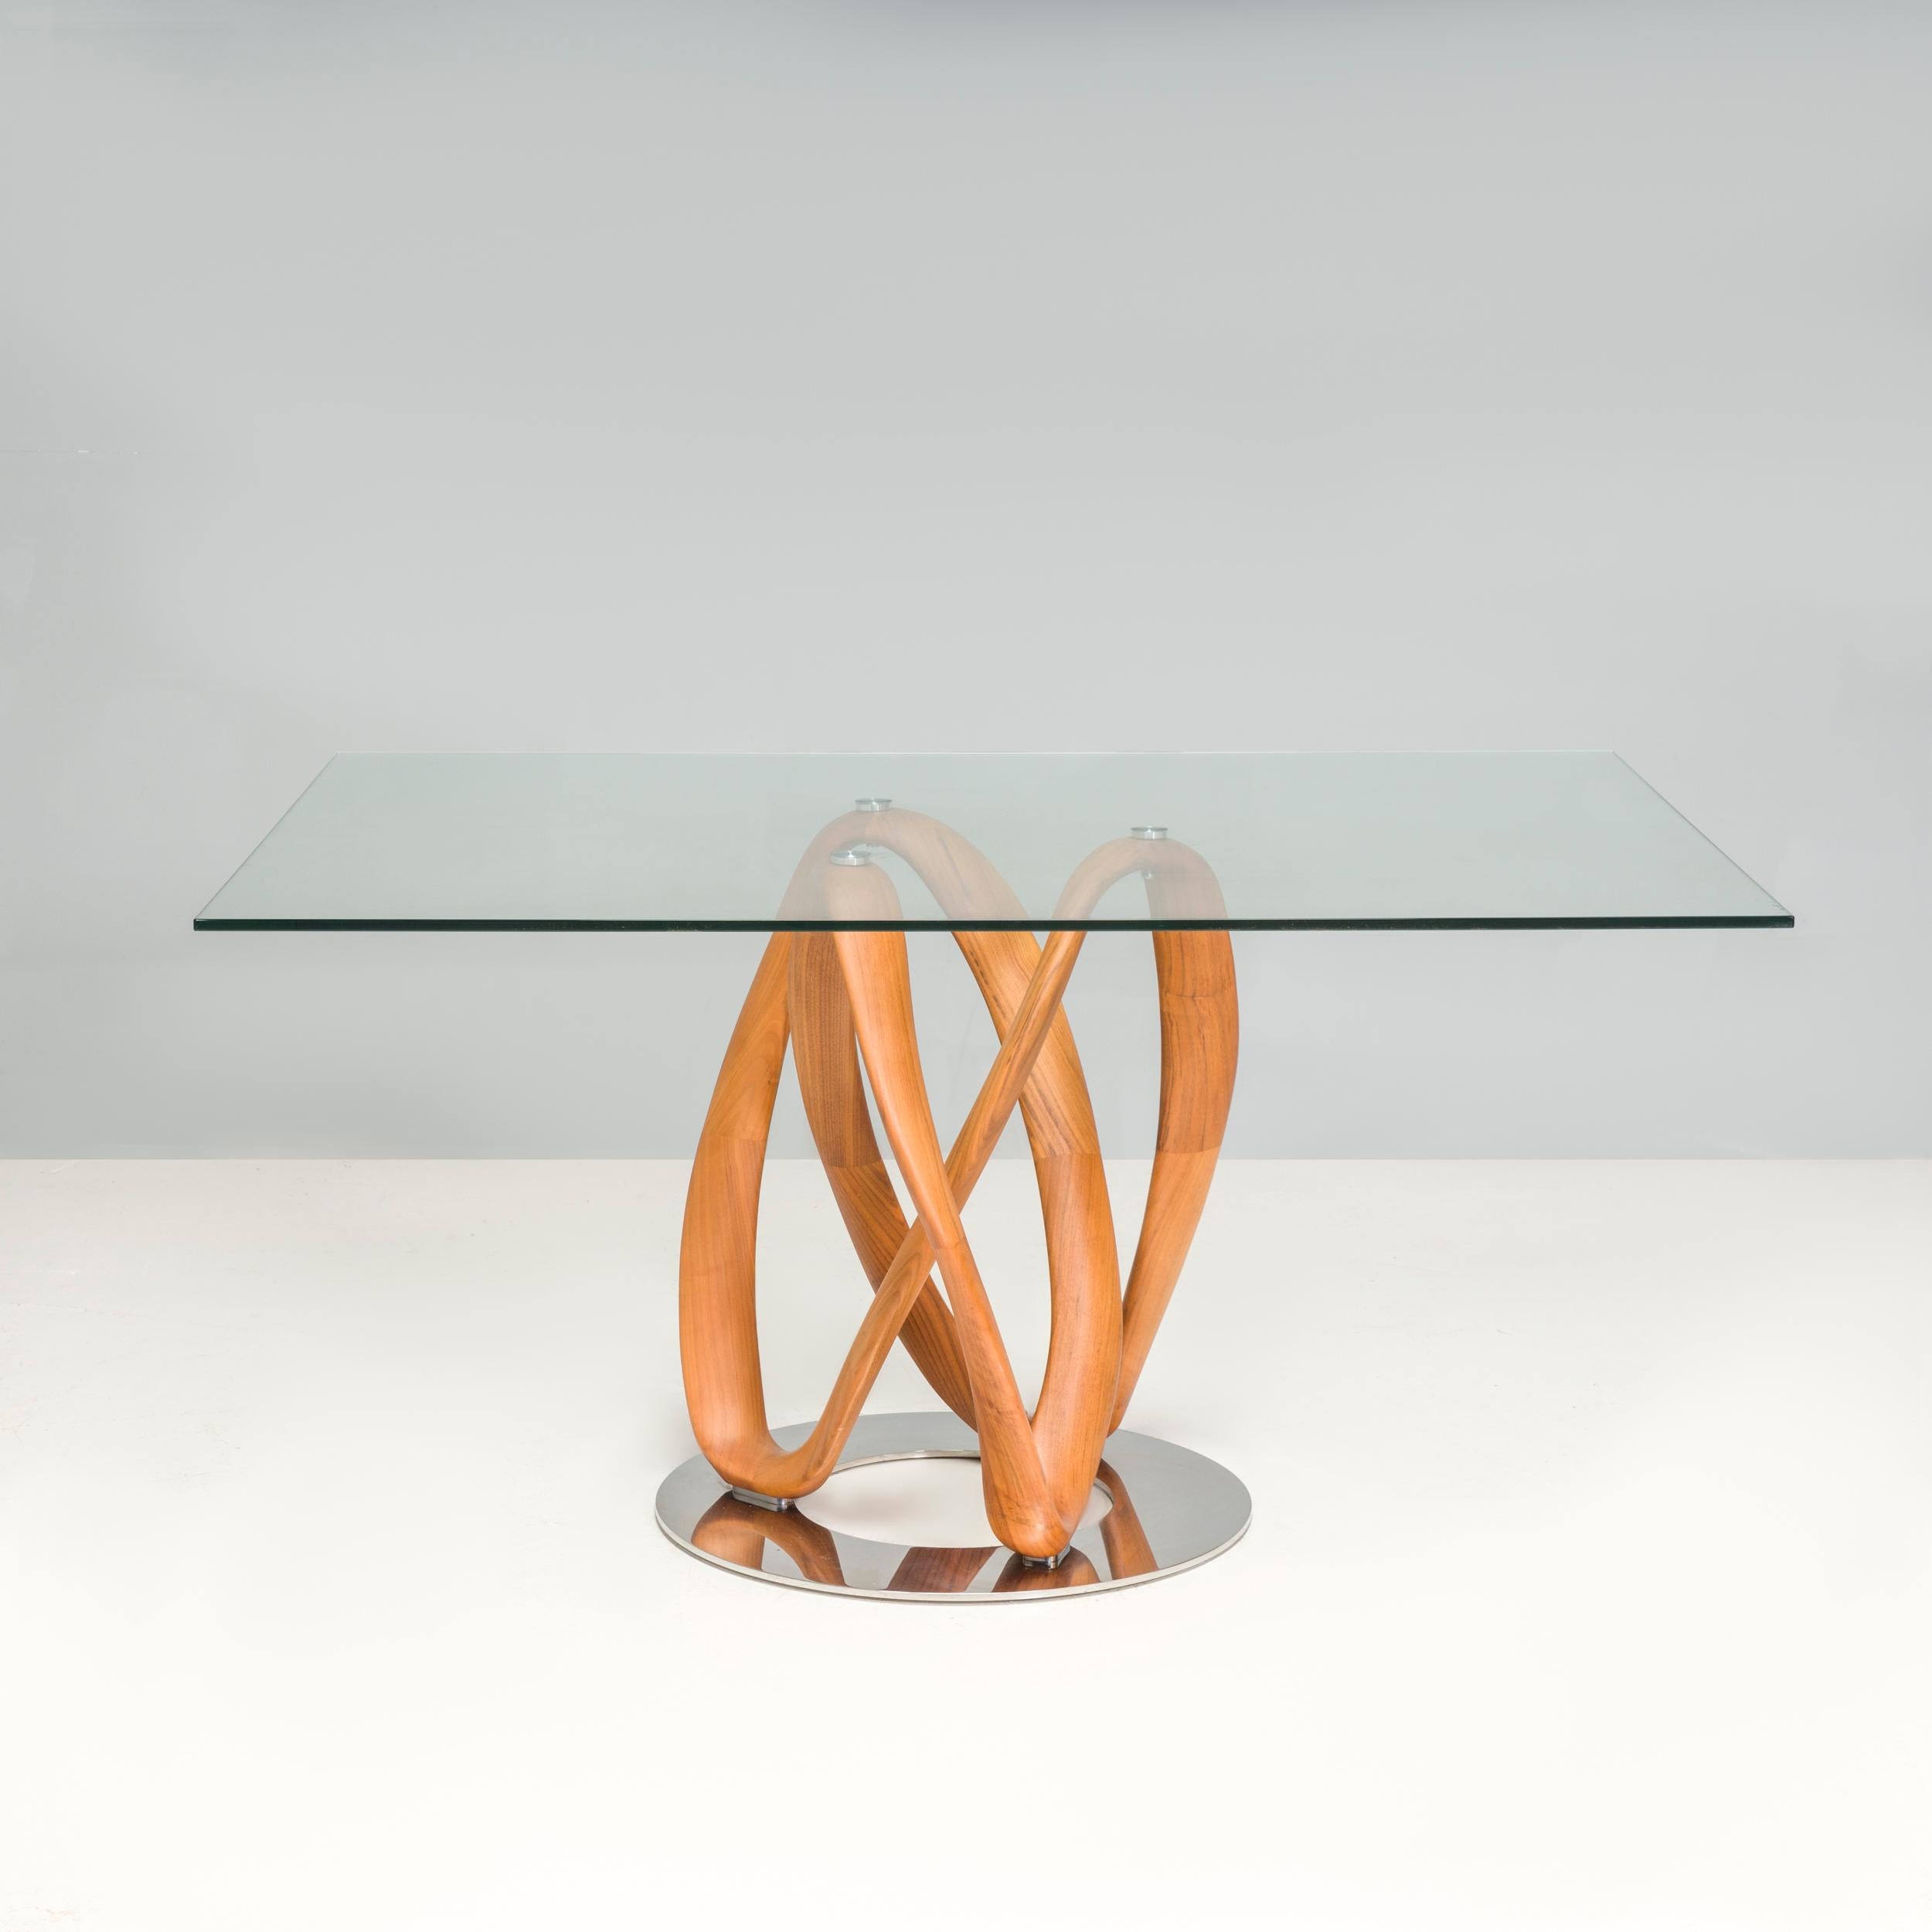 Conçue par Stefano Bigi pour Porada en 2009, la table à débordement est fabriquée à la main dans l'atelier de Porada à Brianza. La table est construite à partir d'une base en noyer Branch avec une forme torsadée qui donne l'impression de branches